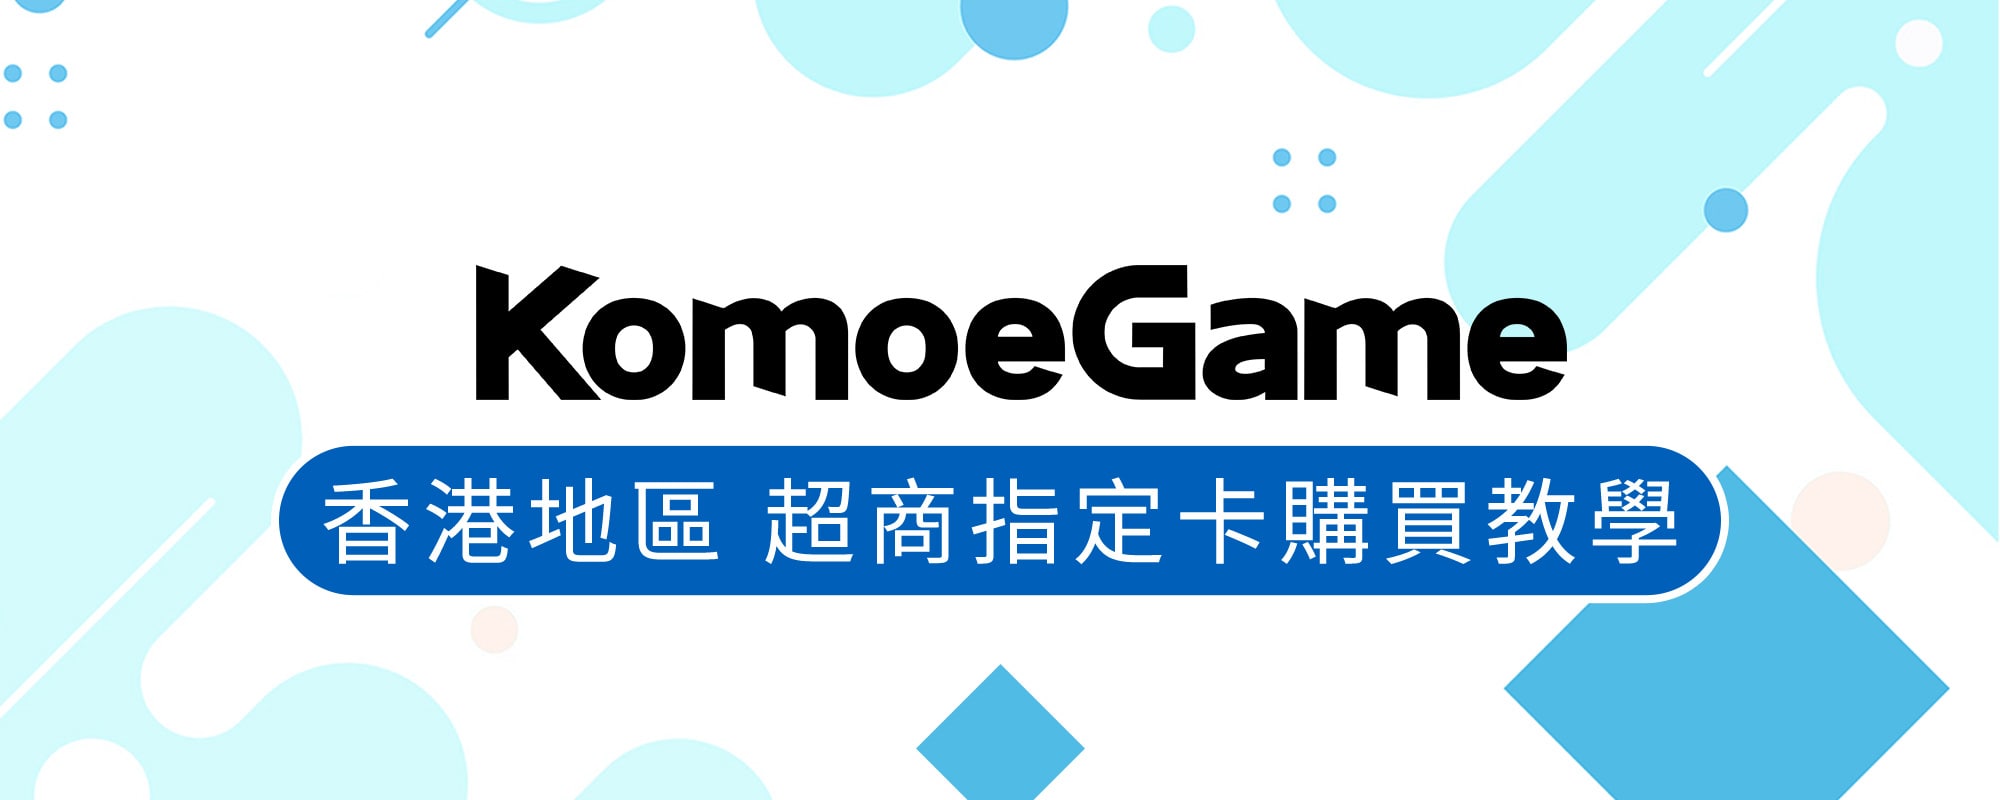   KOMOE GAME儲值 – 香港地區 超商